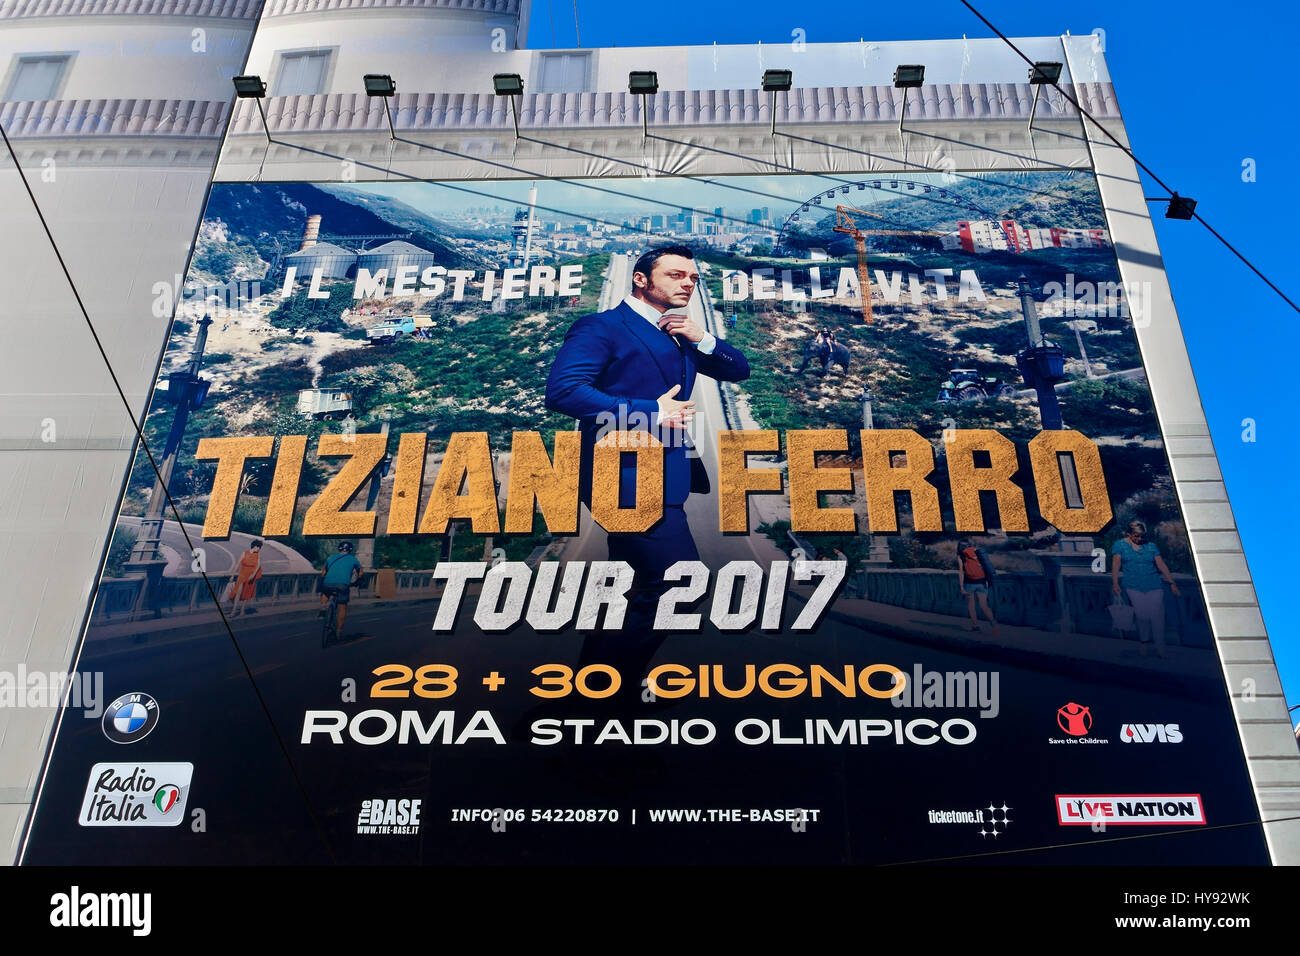 Tiziano Ferro italian singer. “Il mestiere della vita” tour 2017, 28 30 june at Rome Stadium. Huge concert poster on a building facade in Rome, Italy. Stock Photo